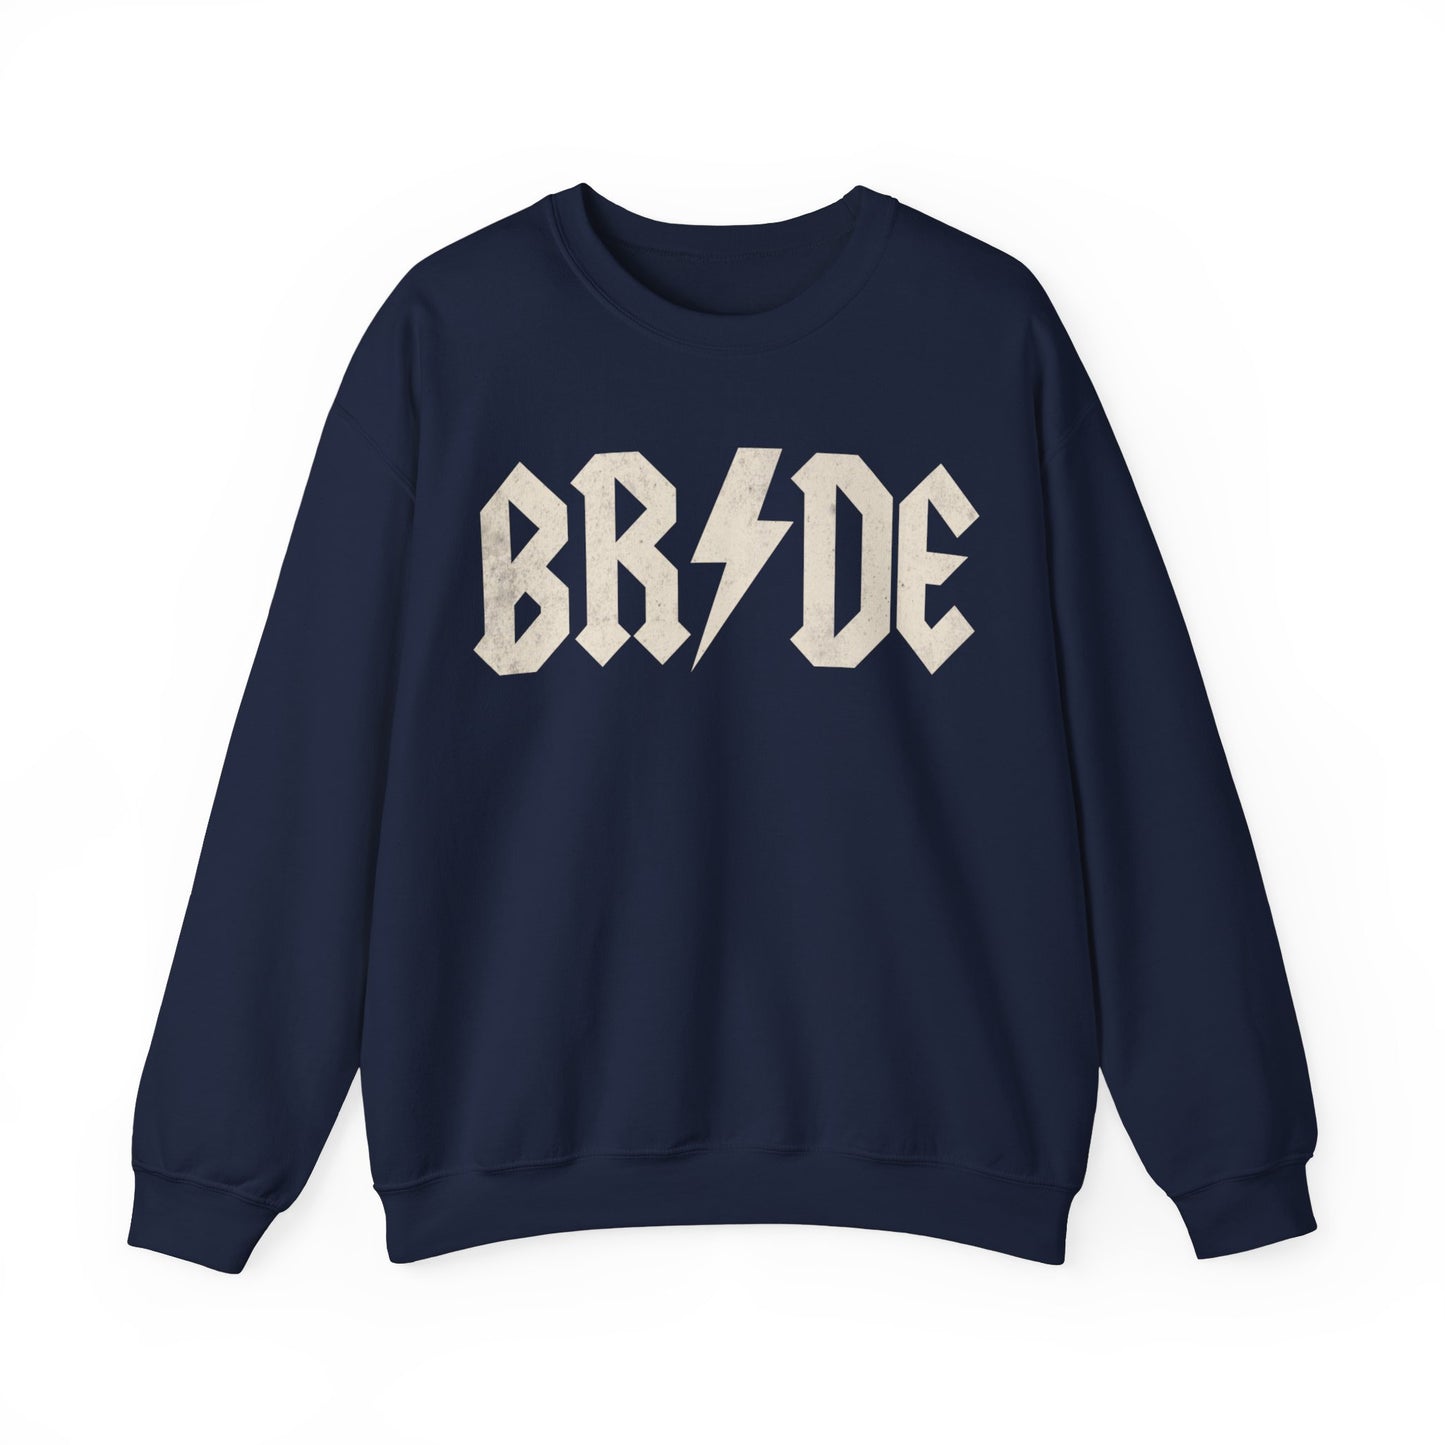 Bride Retro Sweatshirt for Women, Future Bride Sweatshirt for Bachelorette, Gift for Bridal Shower, Retro Sweatshirt for Bride to Be, S1362